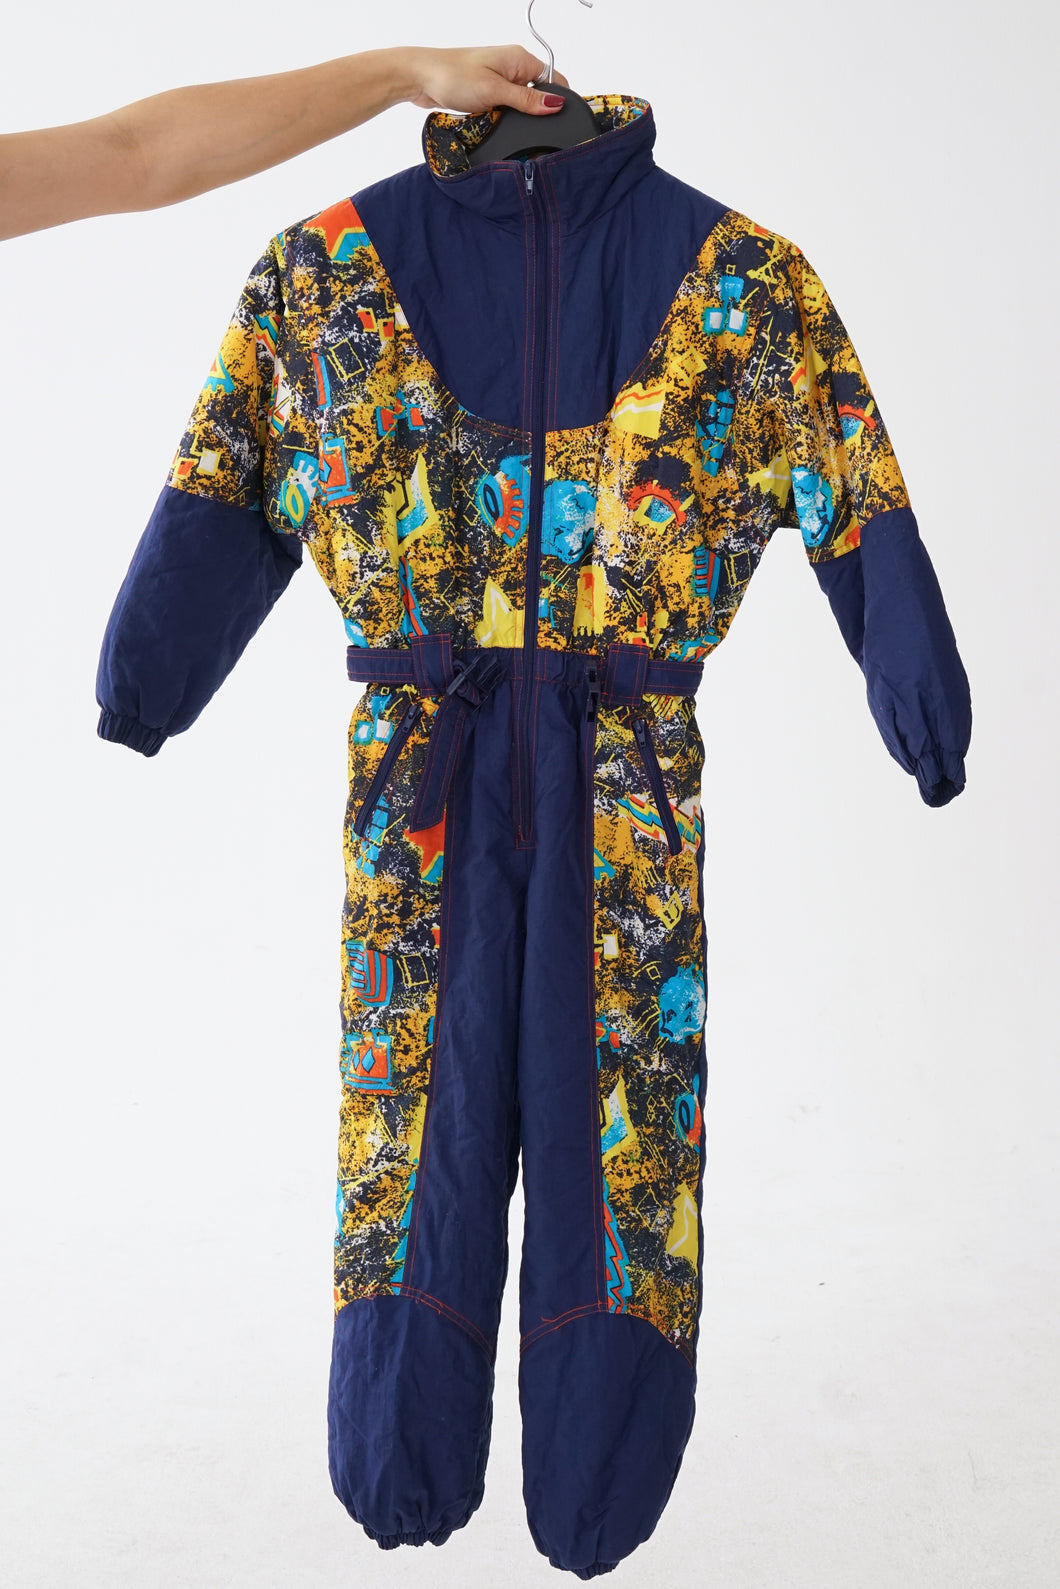 One piece vintage Pocopiano ski suit, snow suit bleu foncé et motifs jaunes unisexe taille XXS (ou enfant)